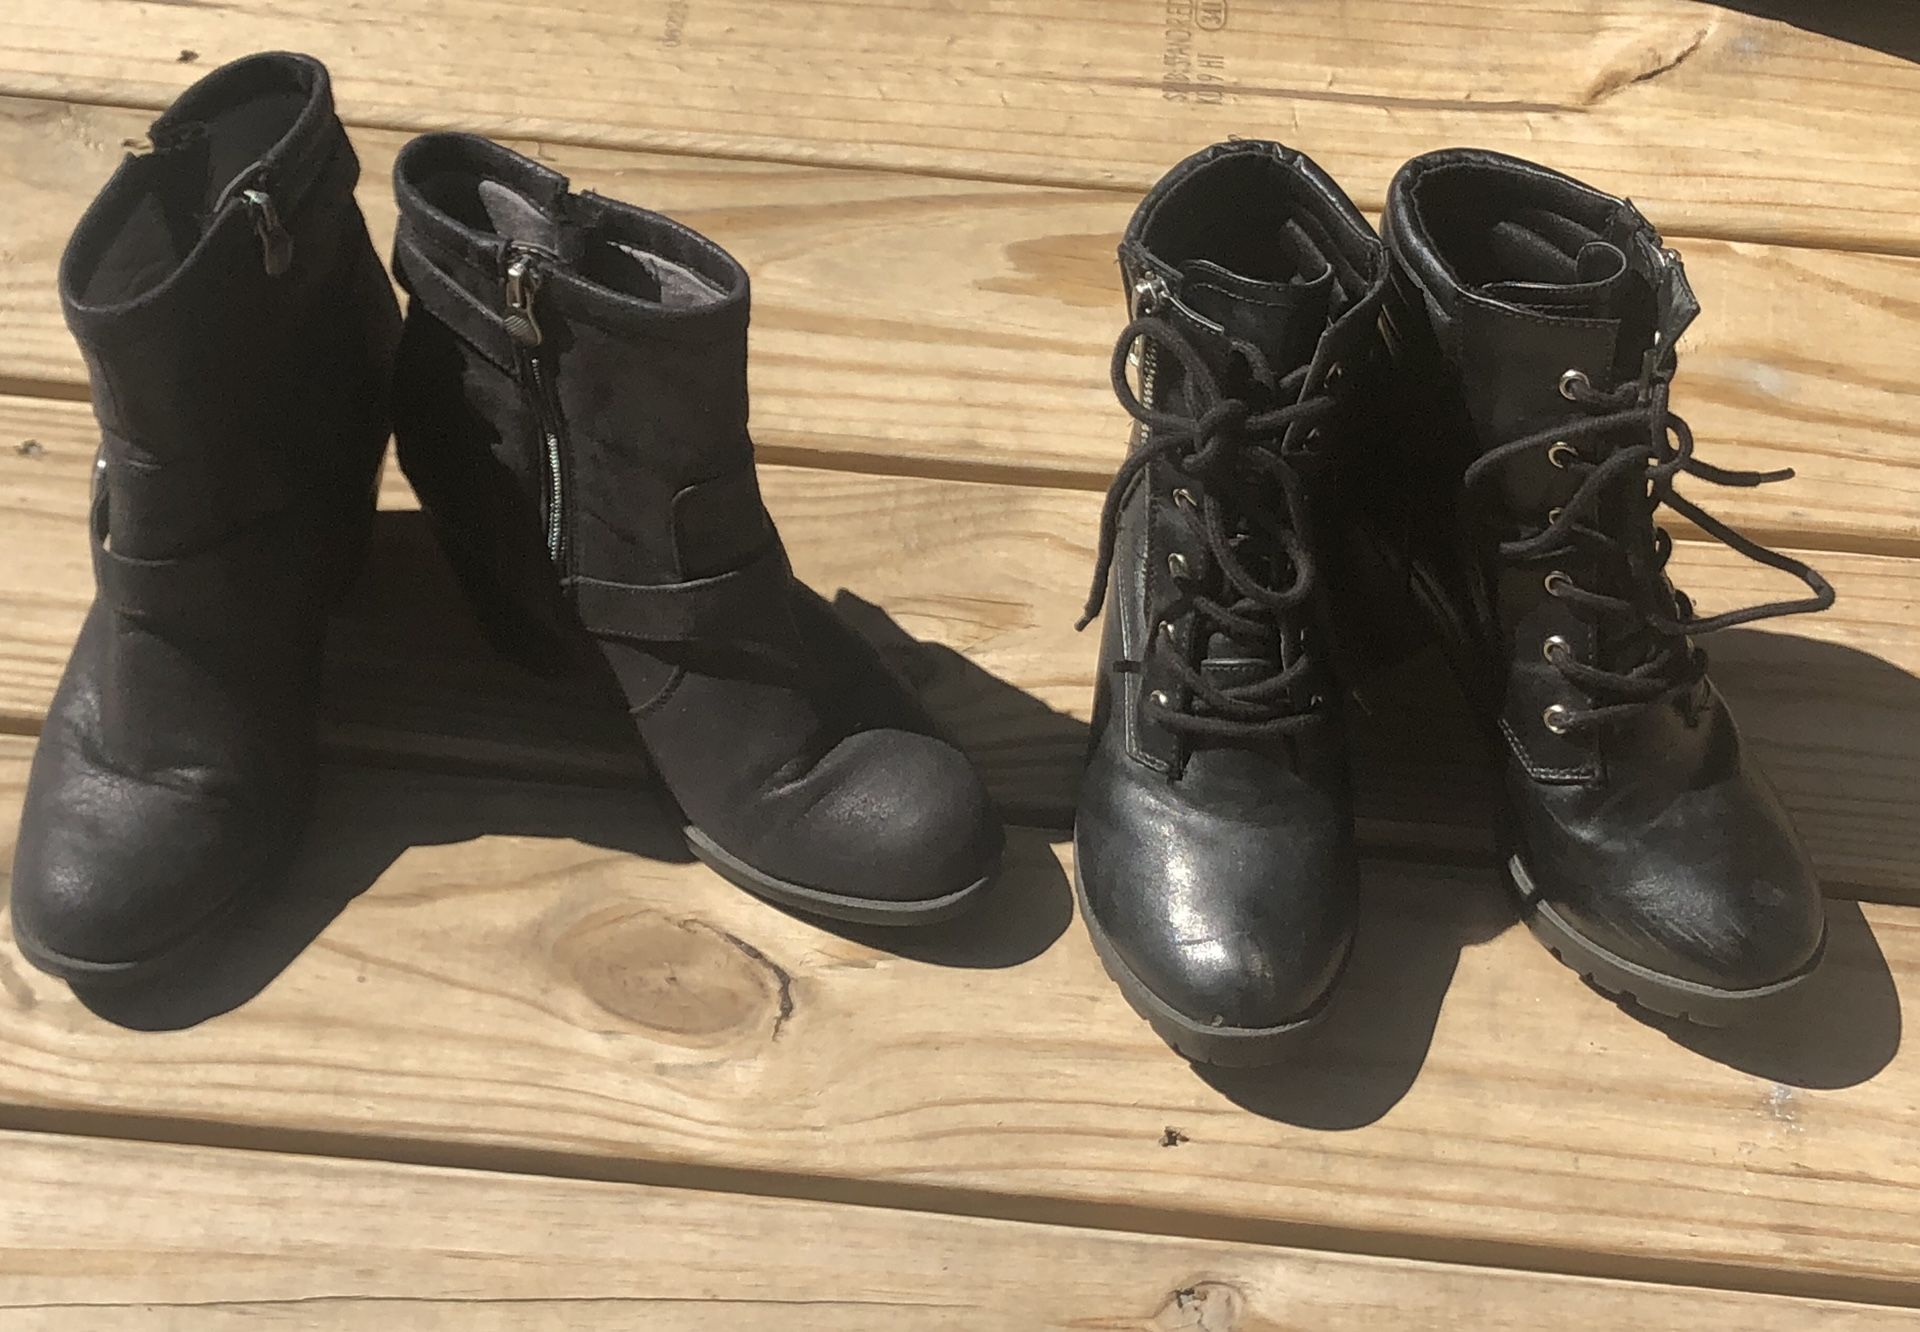 Ankle boots bundle